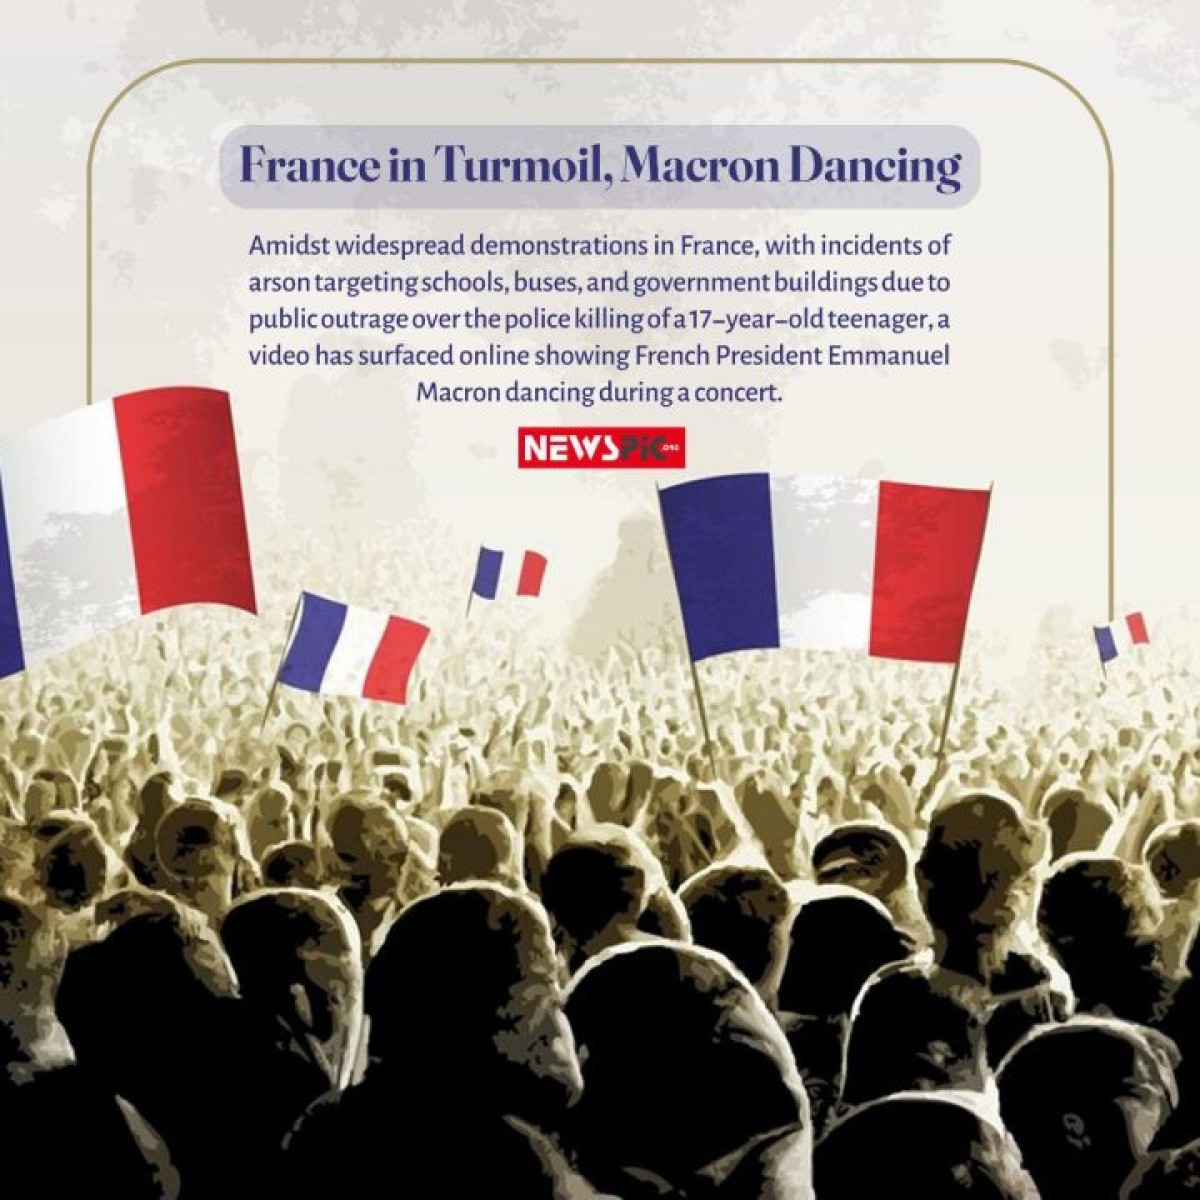 France in Turmoil, Macron Dancing